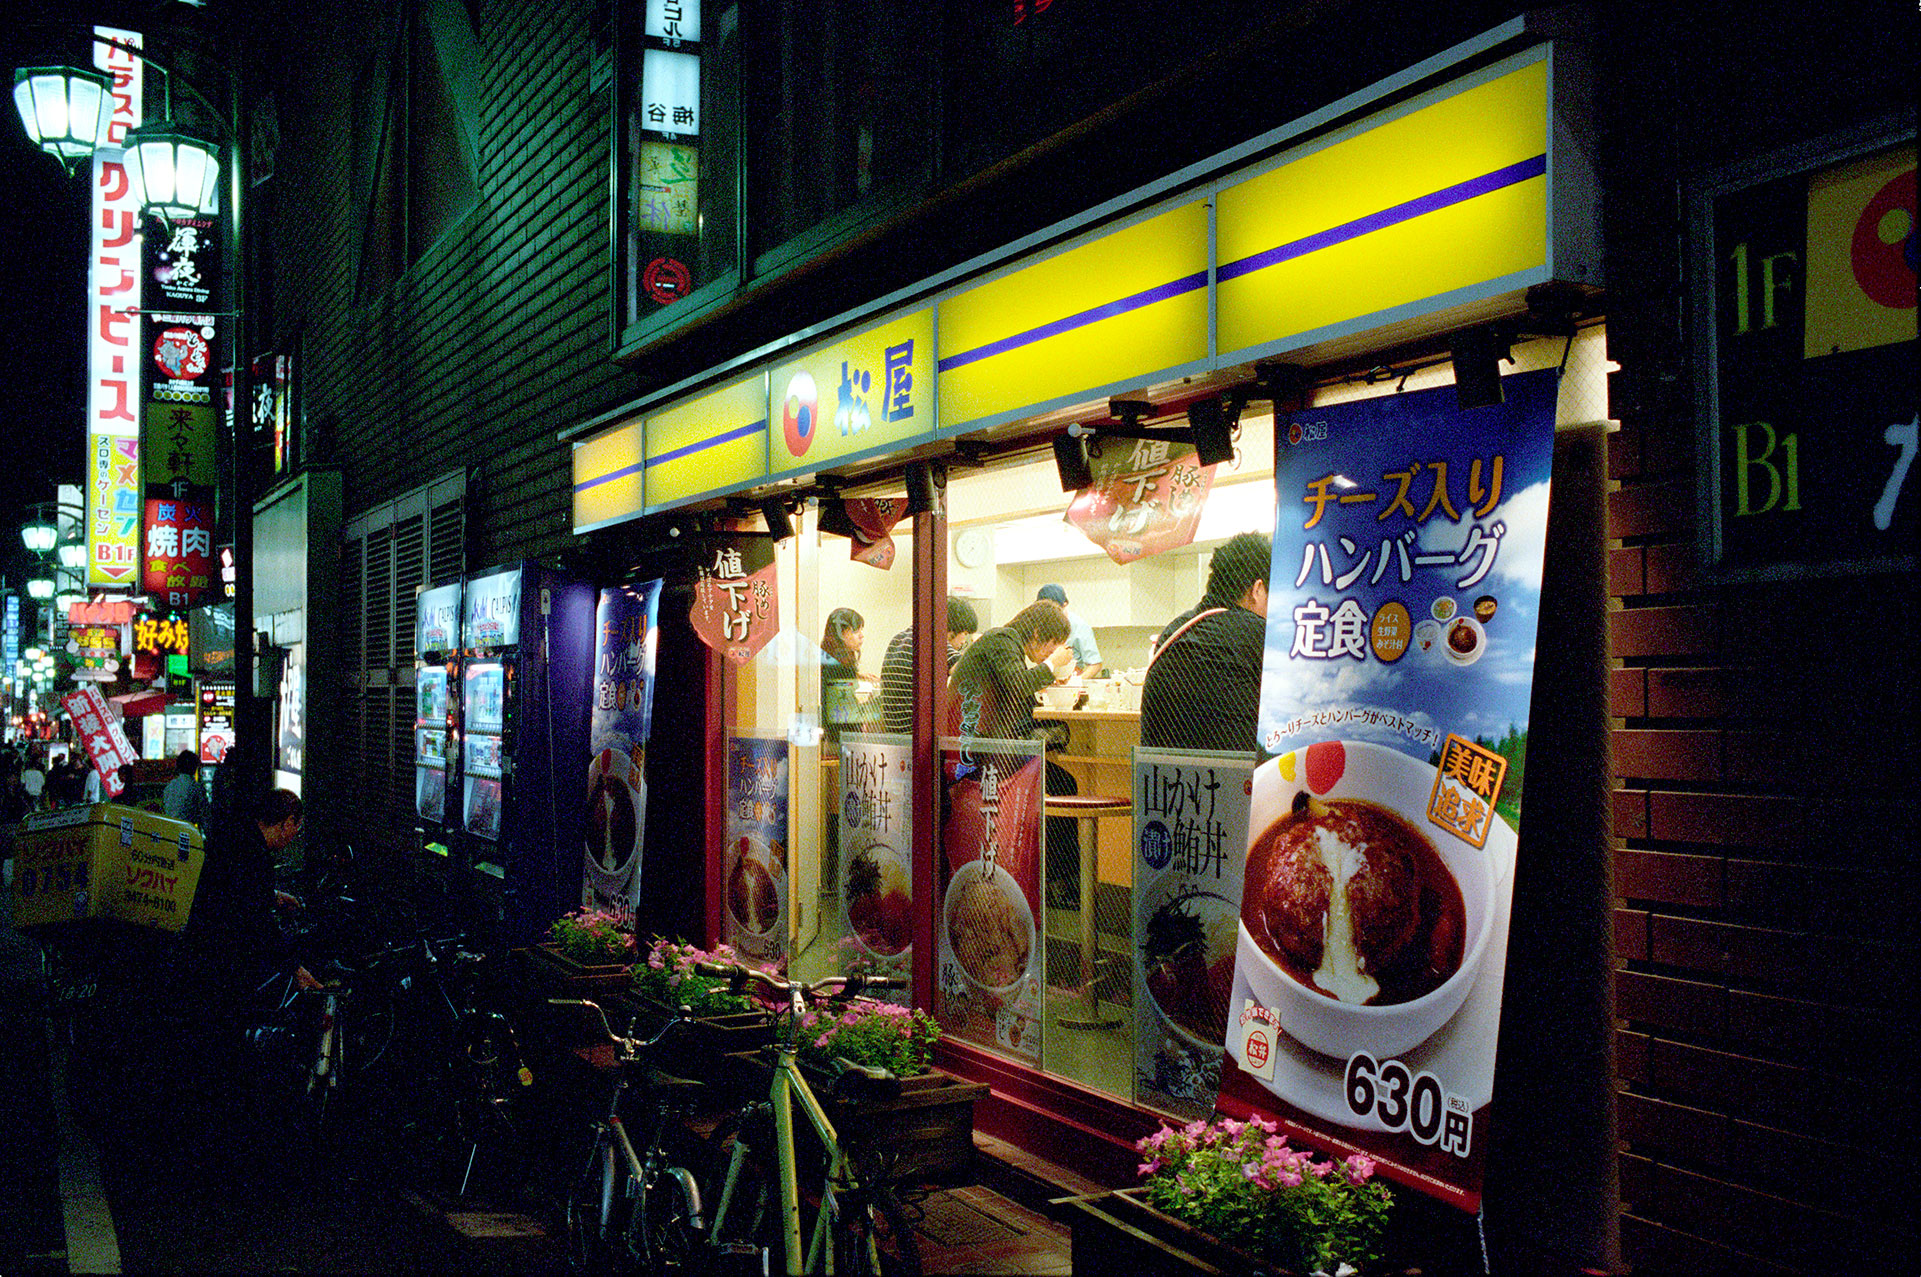 A ramen shop in Shinjuku, Tokyo, 2009